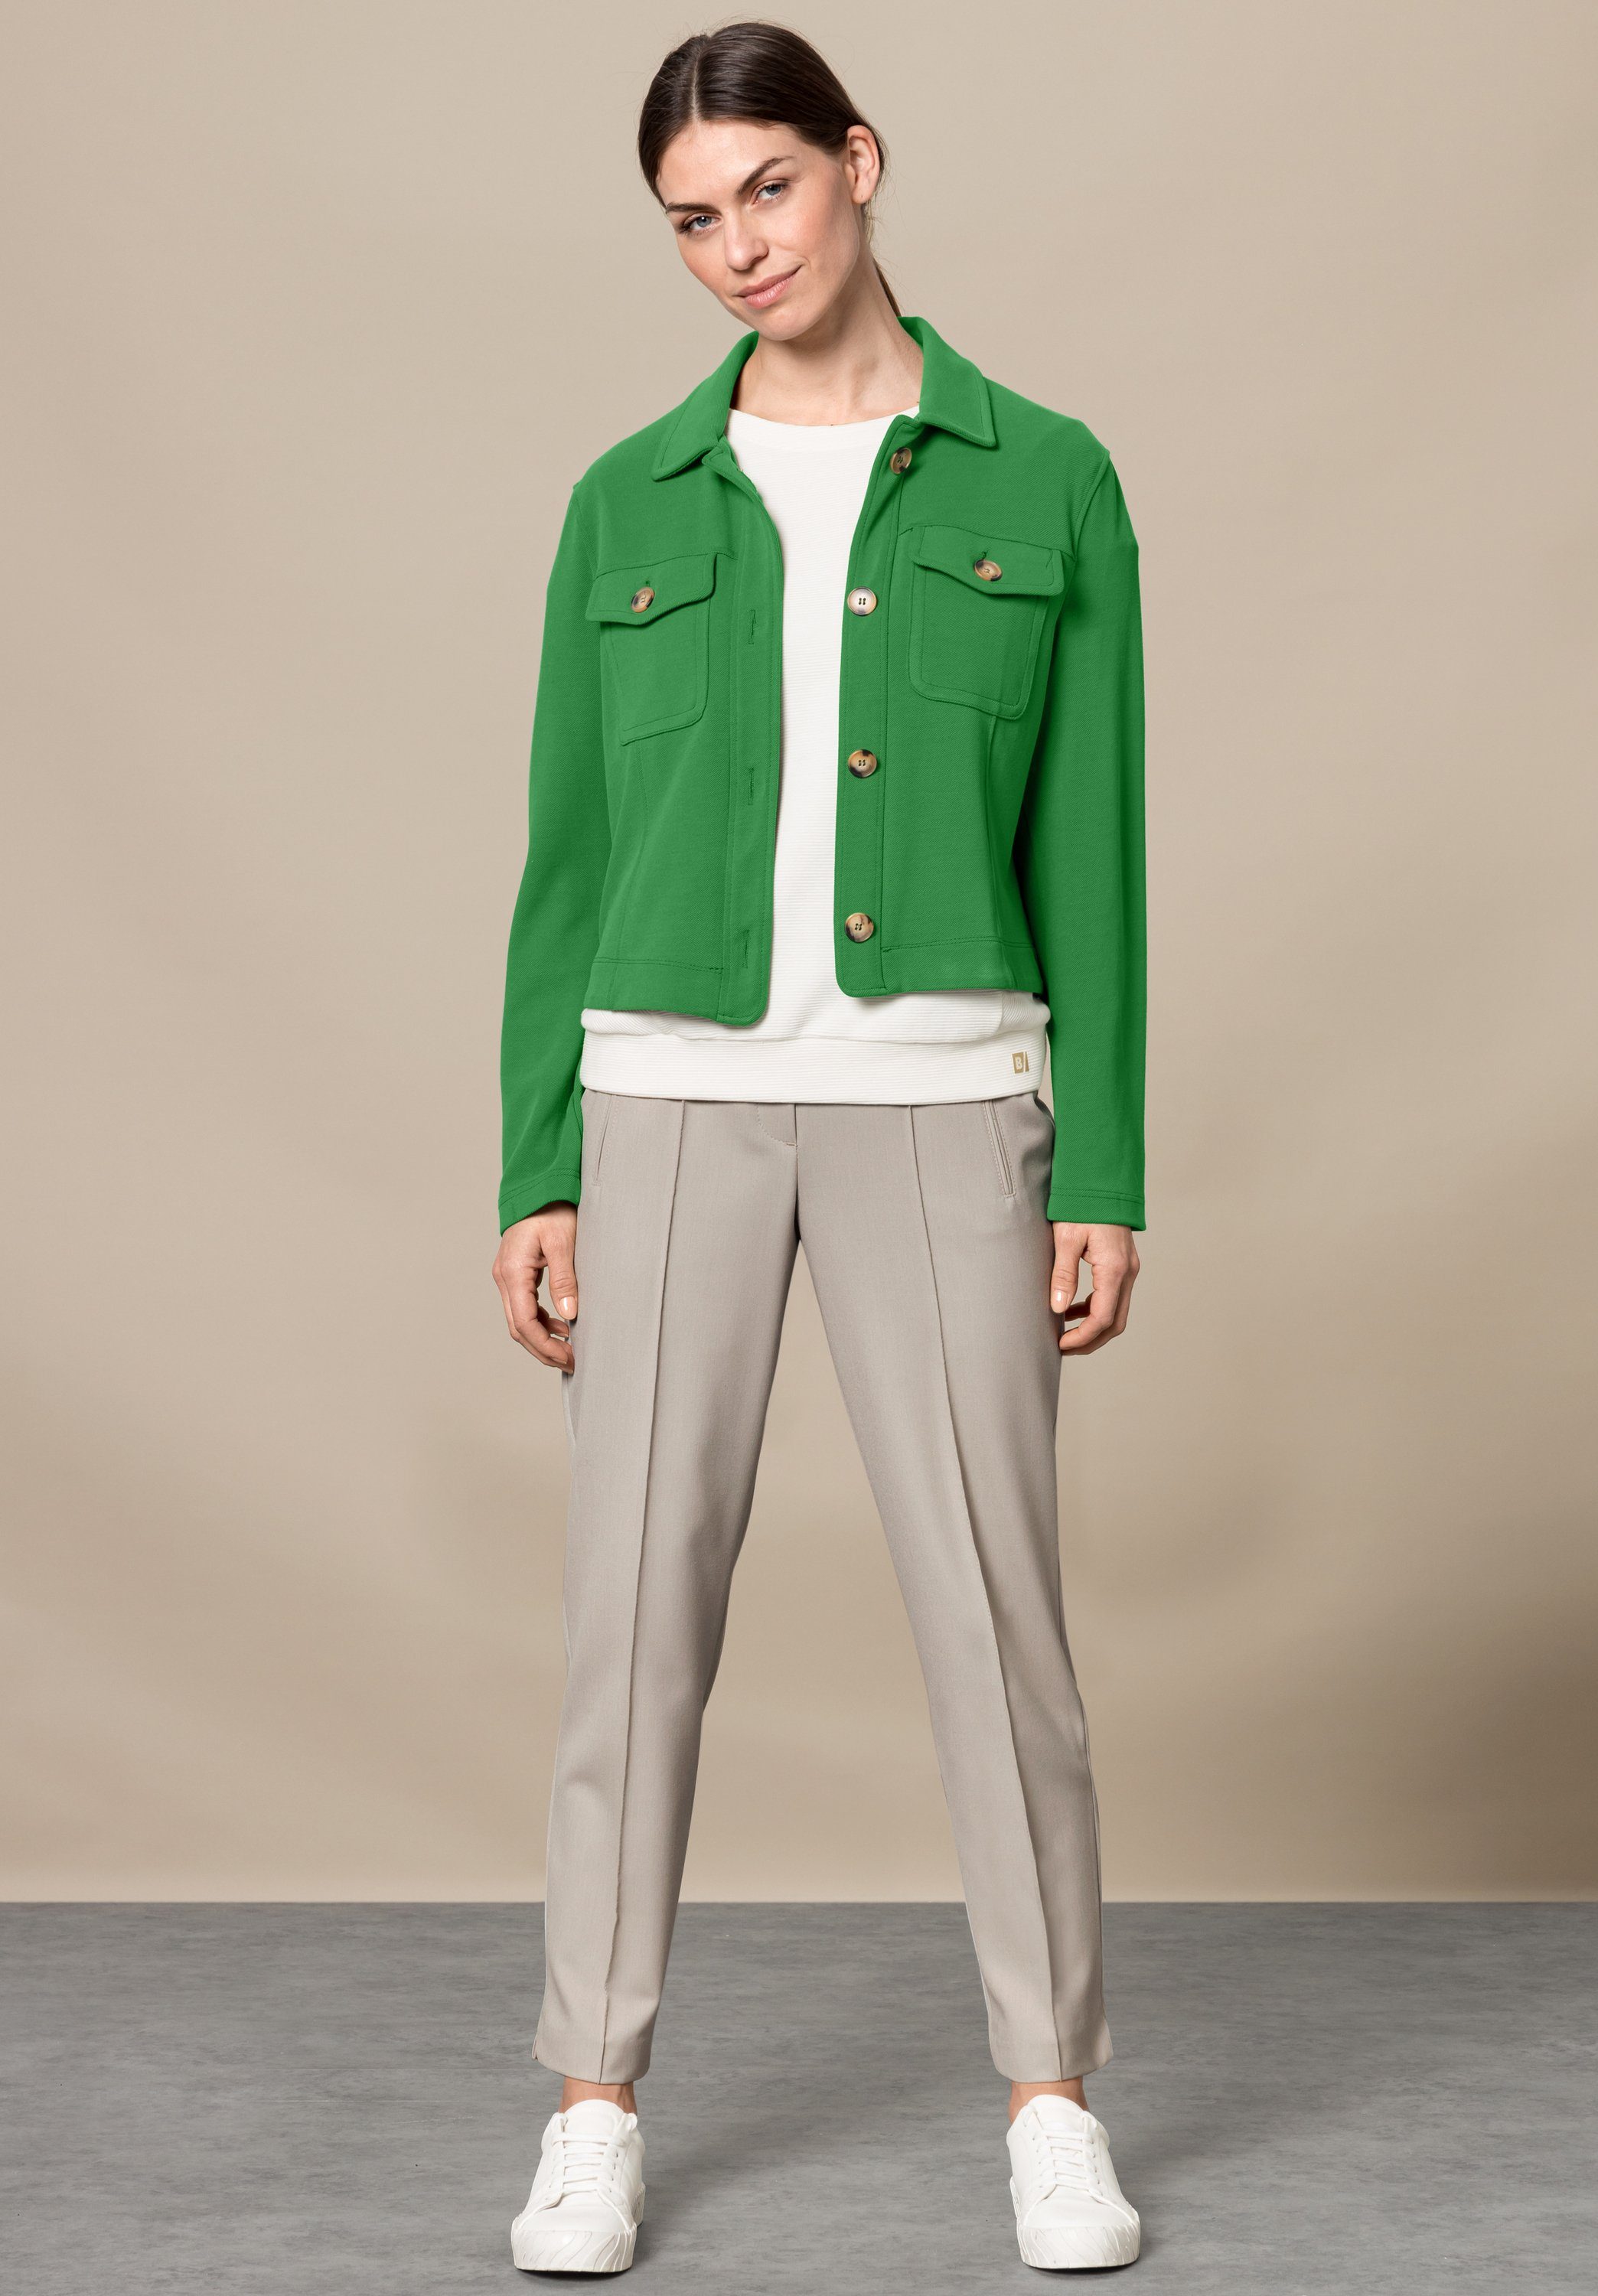 MIRANDA mit stylischen dark Trendfarbe Details in bianca greenery Kurzjacke angesagter